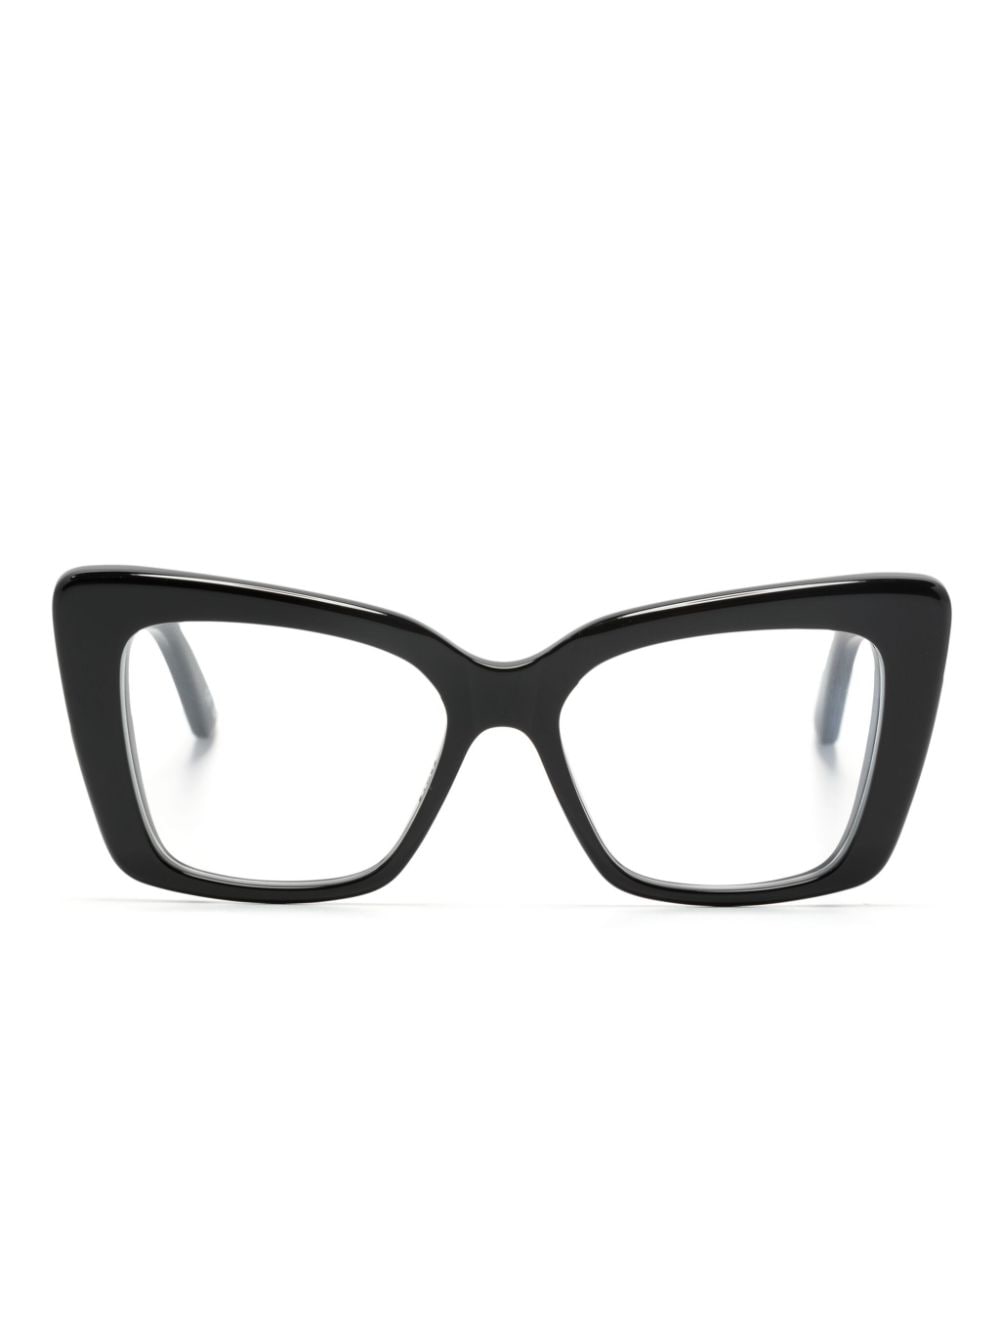 Balenciaga Eyewear Everyday Brille mit Butterfly-Gestell - Schwarz von Balenciaga Eyewear